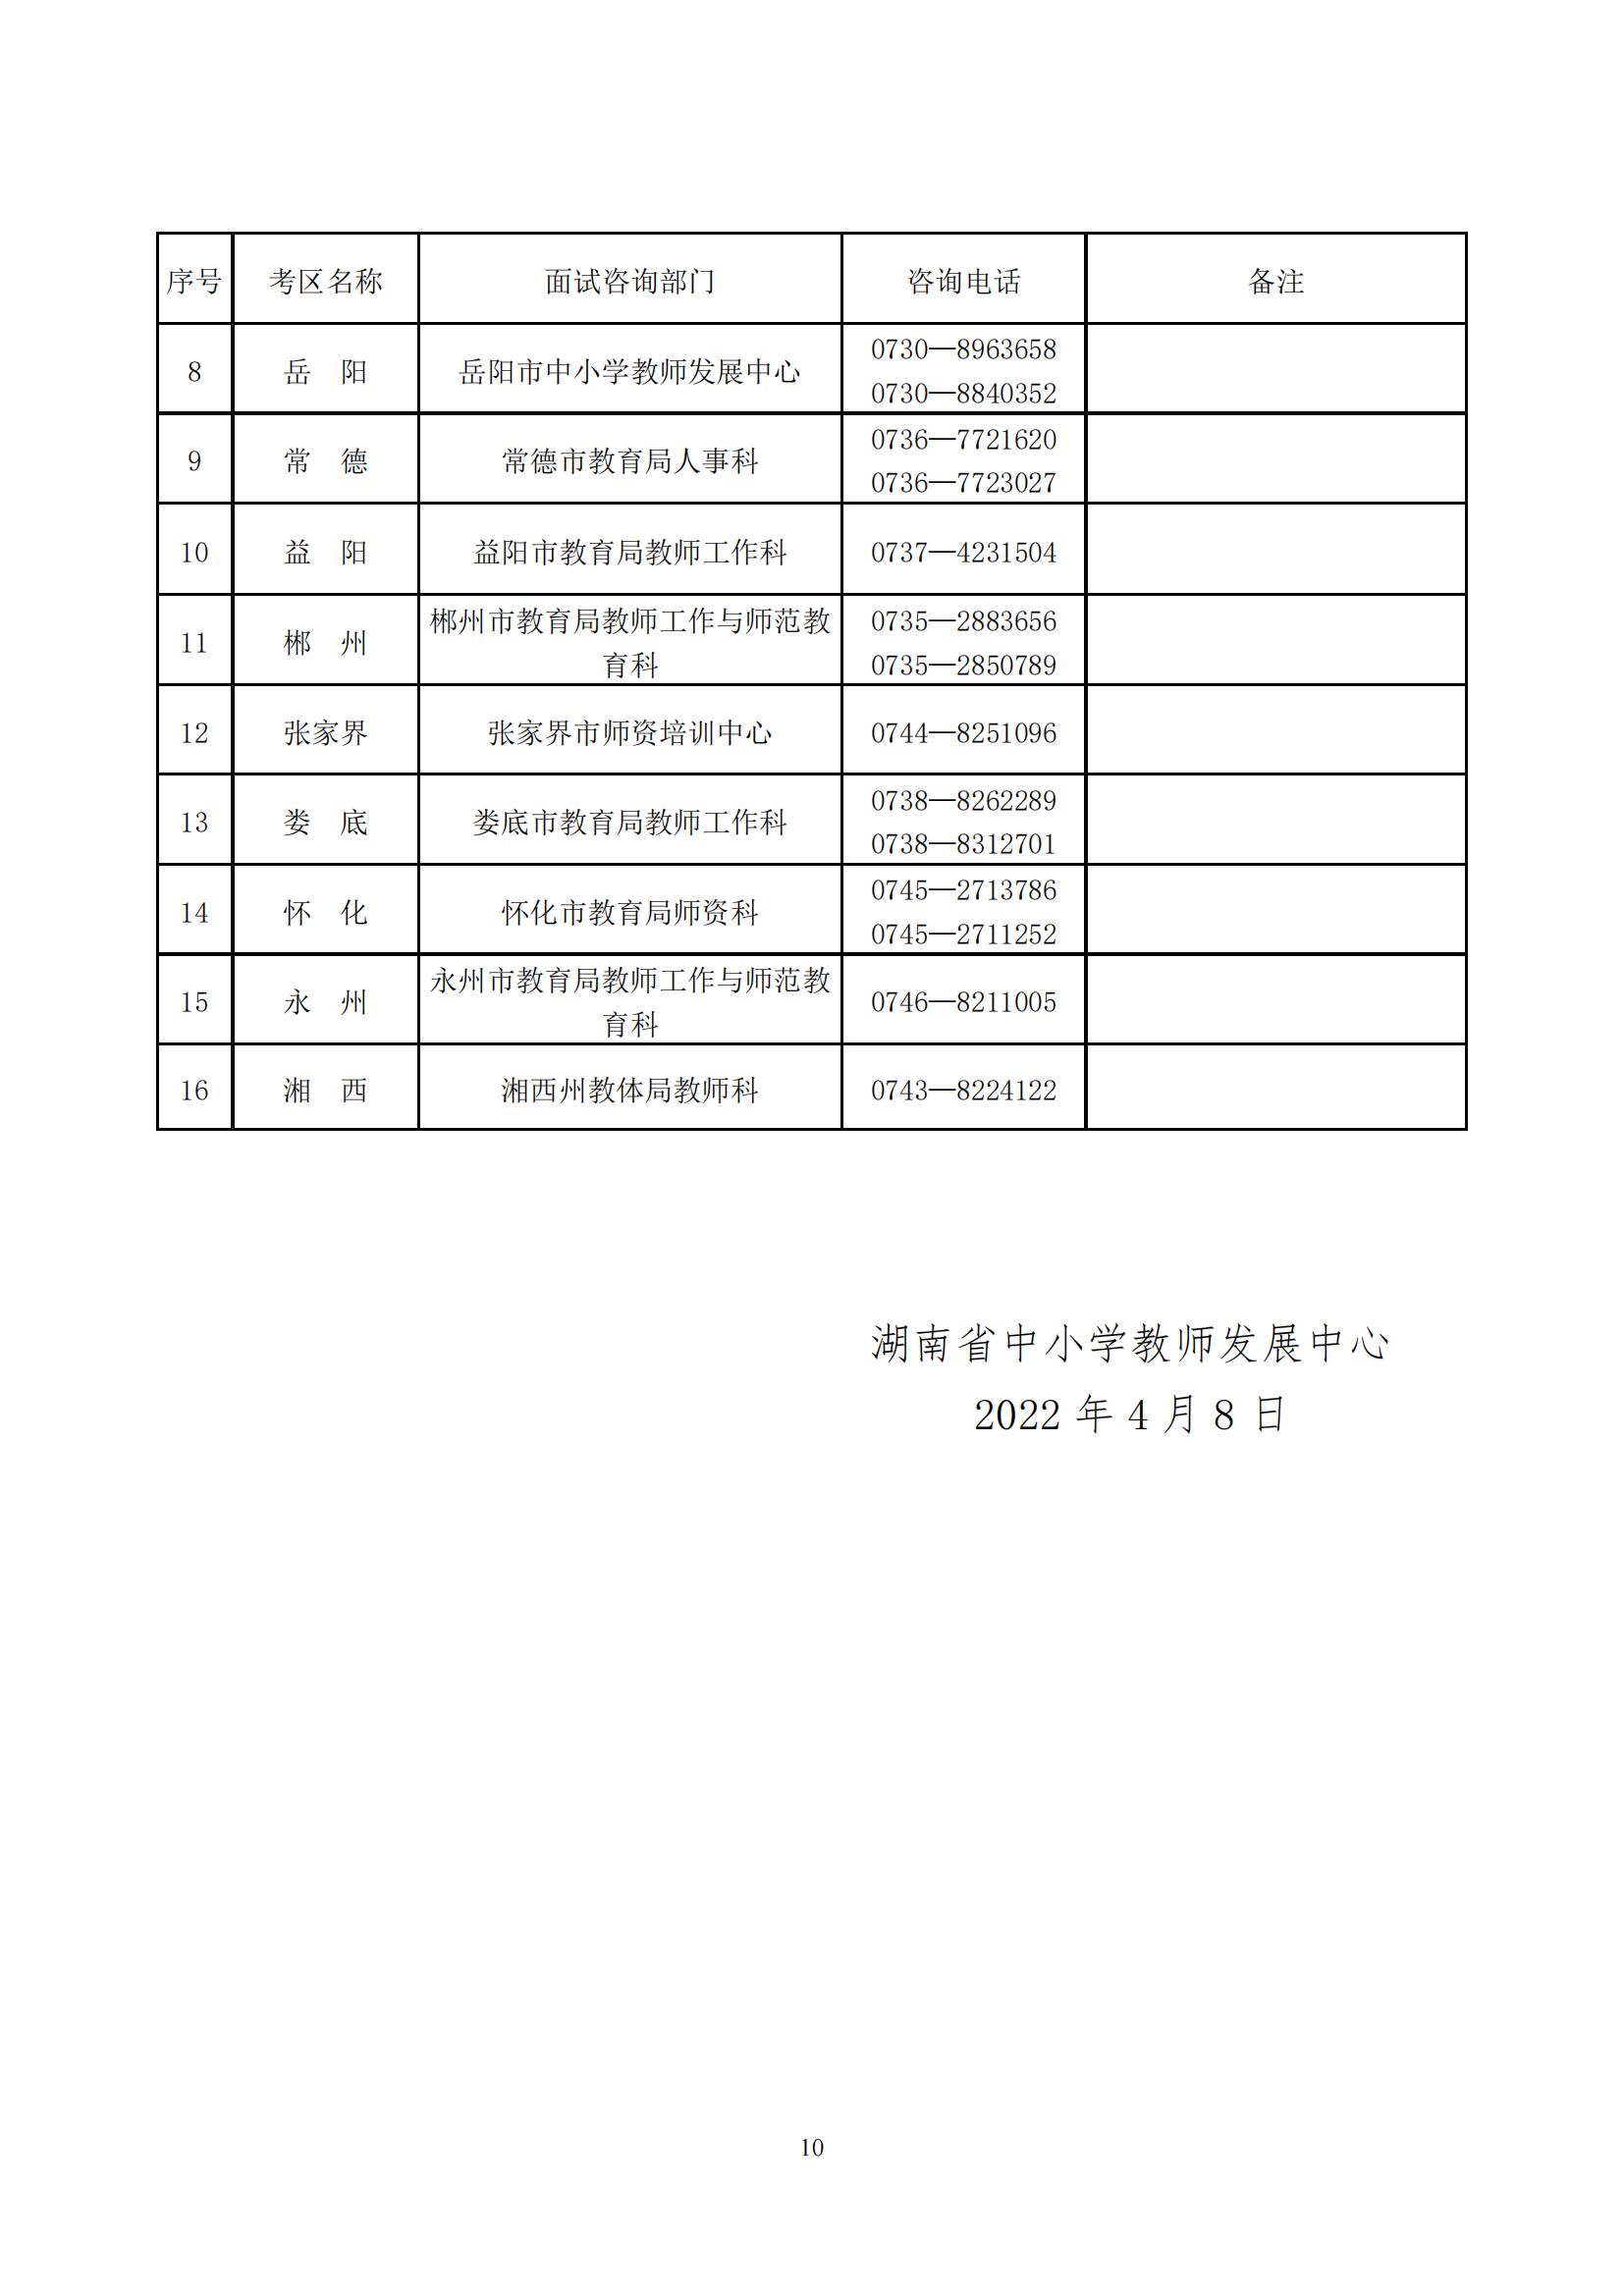 2022年湖南省上半年中小学教师资格考试面试公告(图10)